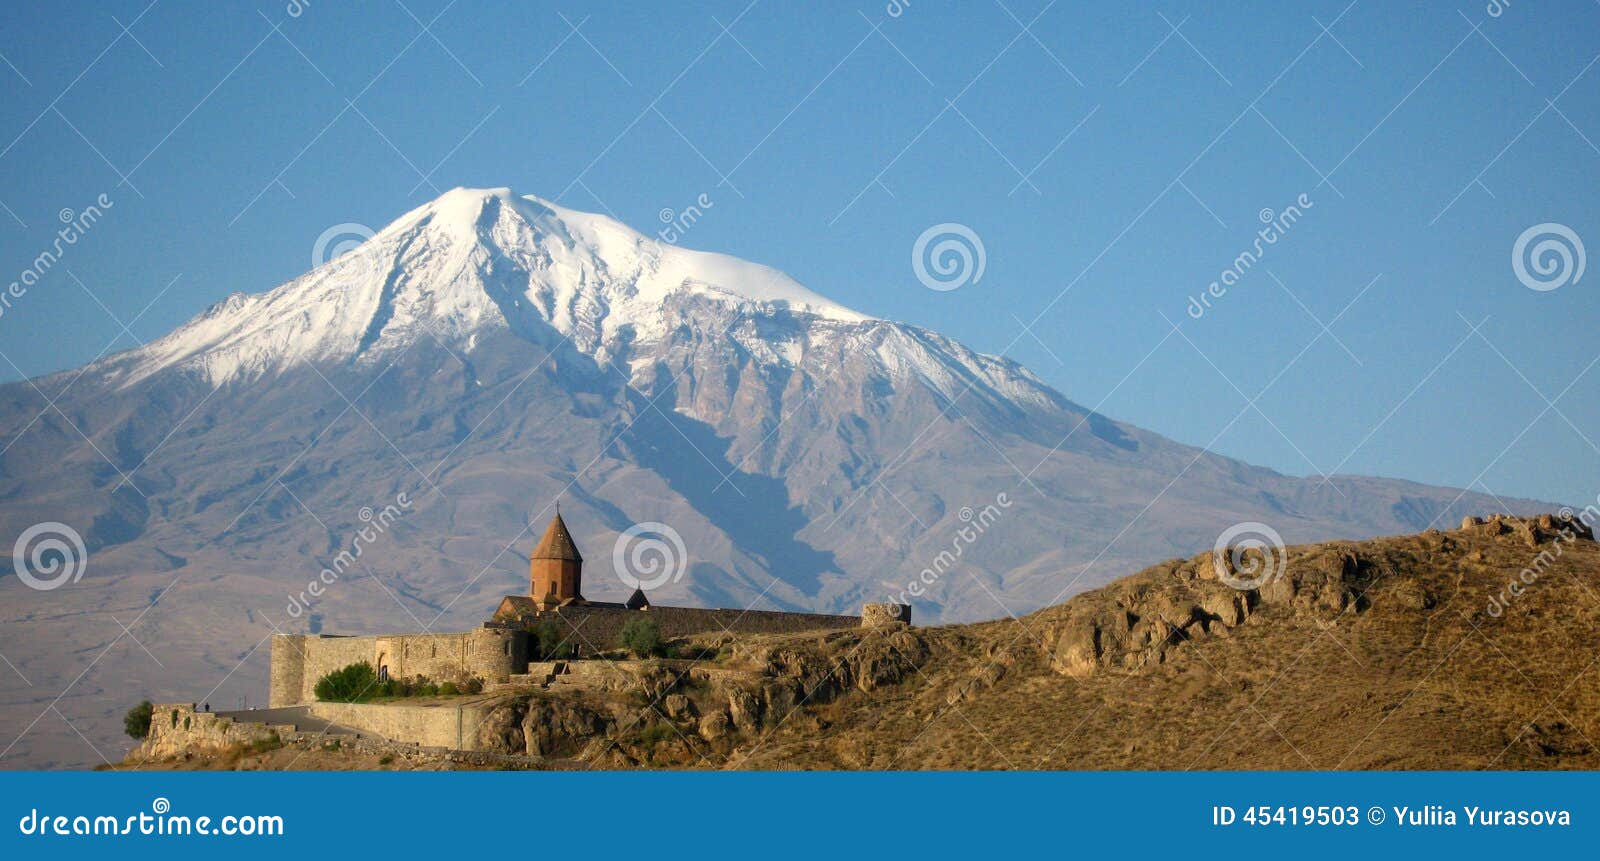 Antyczny ortodoksyjny kamienny monaster w Armenia, Khor VirapÂ monasterze, robić czerwona cegła Ararat i góra. Antyczny ortodoksyjny kamienny monaster w Armenia, Khor VirapÂ monasterze, robić czerwonej cegły, góry Ararat góra Ararat i krajobraz below Armenia i Indyczej rewolucjonistki w jesieni śnieżna nakrętka na halnym wierzchołku wulkan